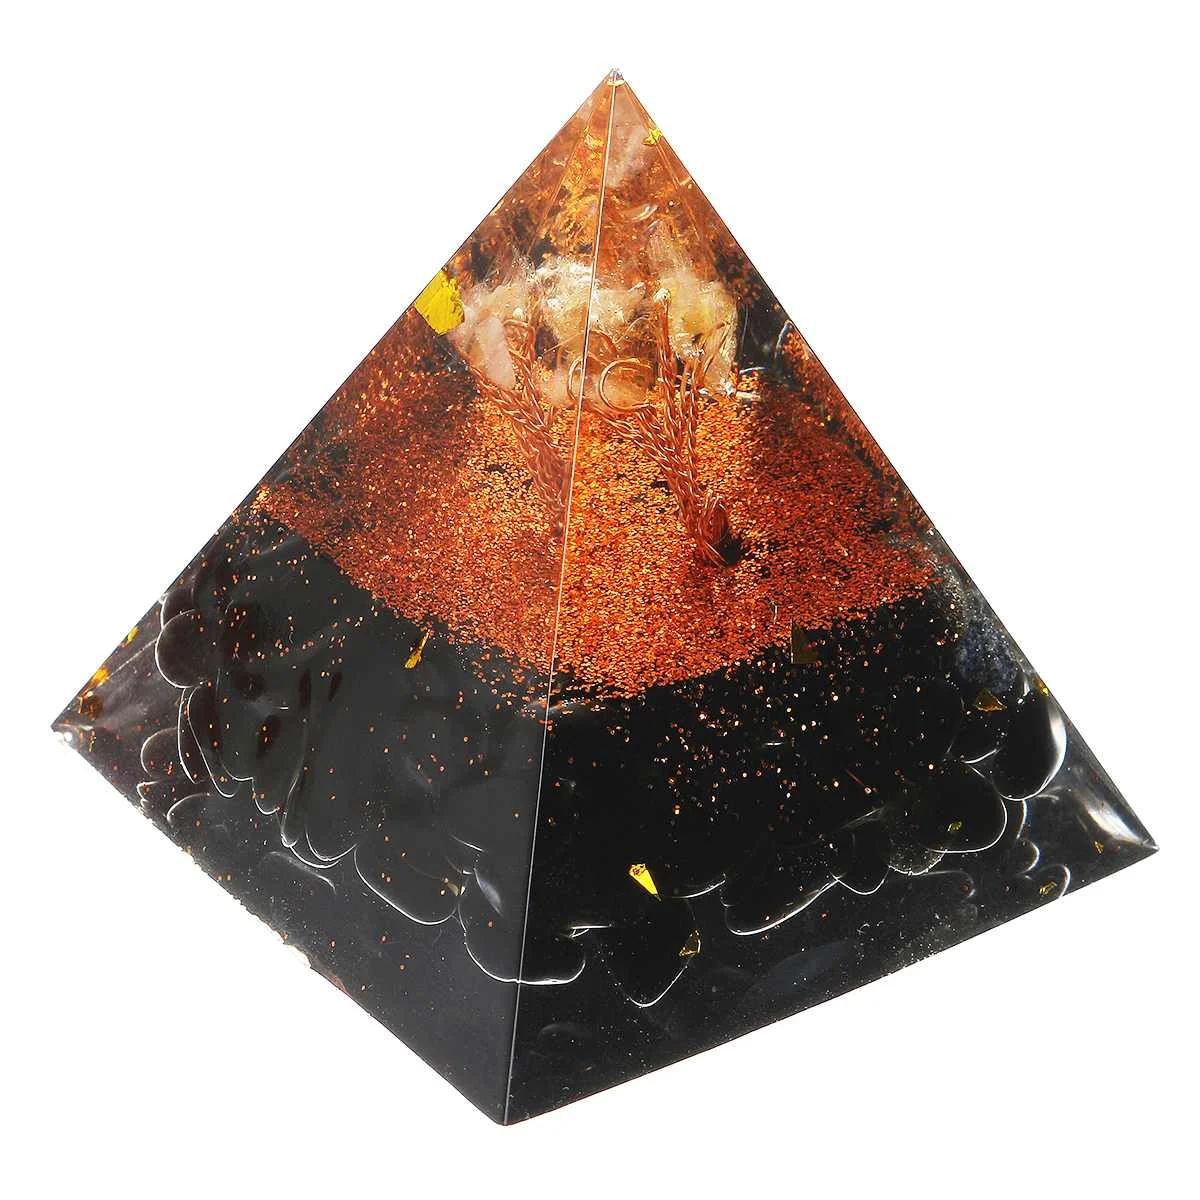 Кристалл Аметист энергетический круг целебный Кристалл Рейки Пирамида чакры натуральный камень Orgone Orgonite пирамиды Декор для дома в стиле Фэн-Шуя